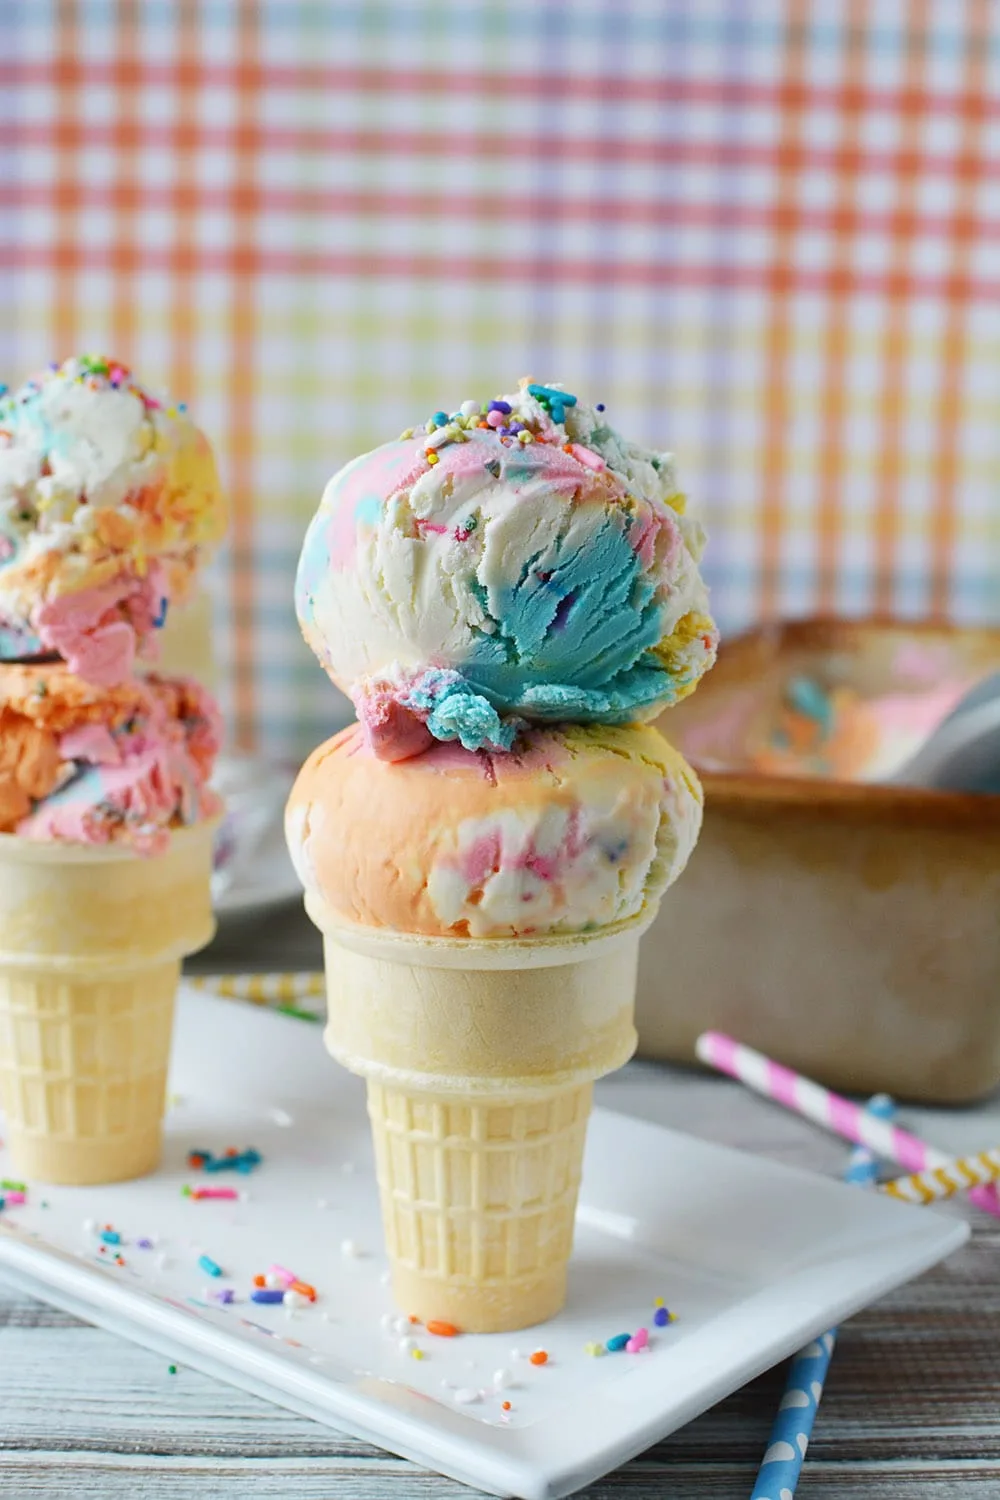 Ice cream cone with two scoops of unicorn ice cream.